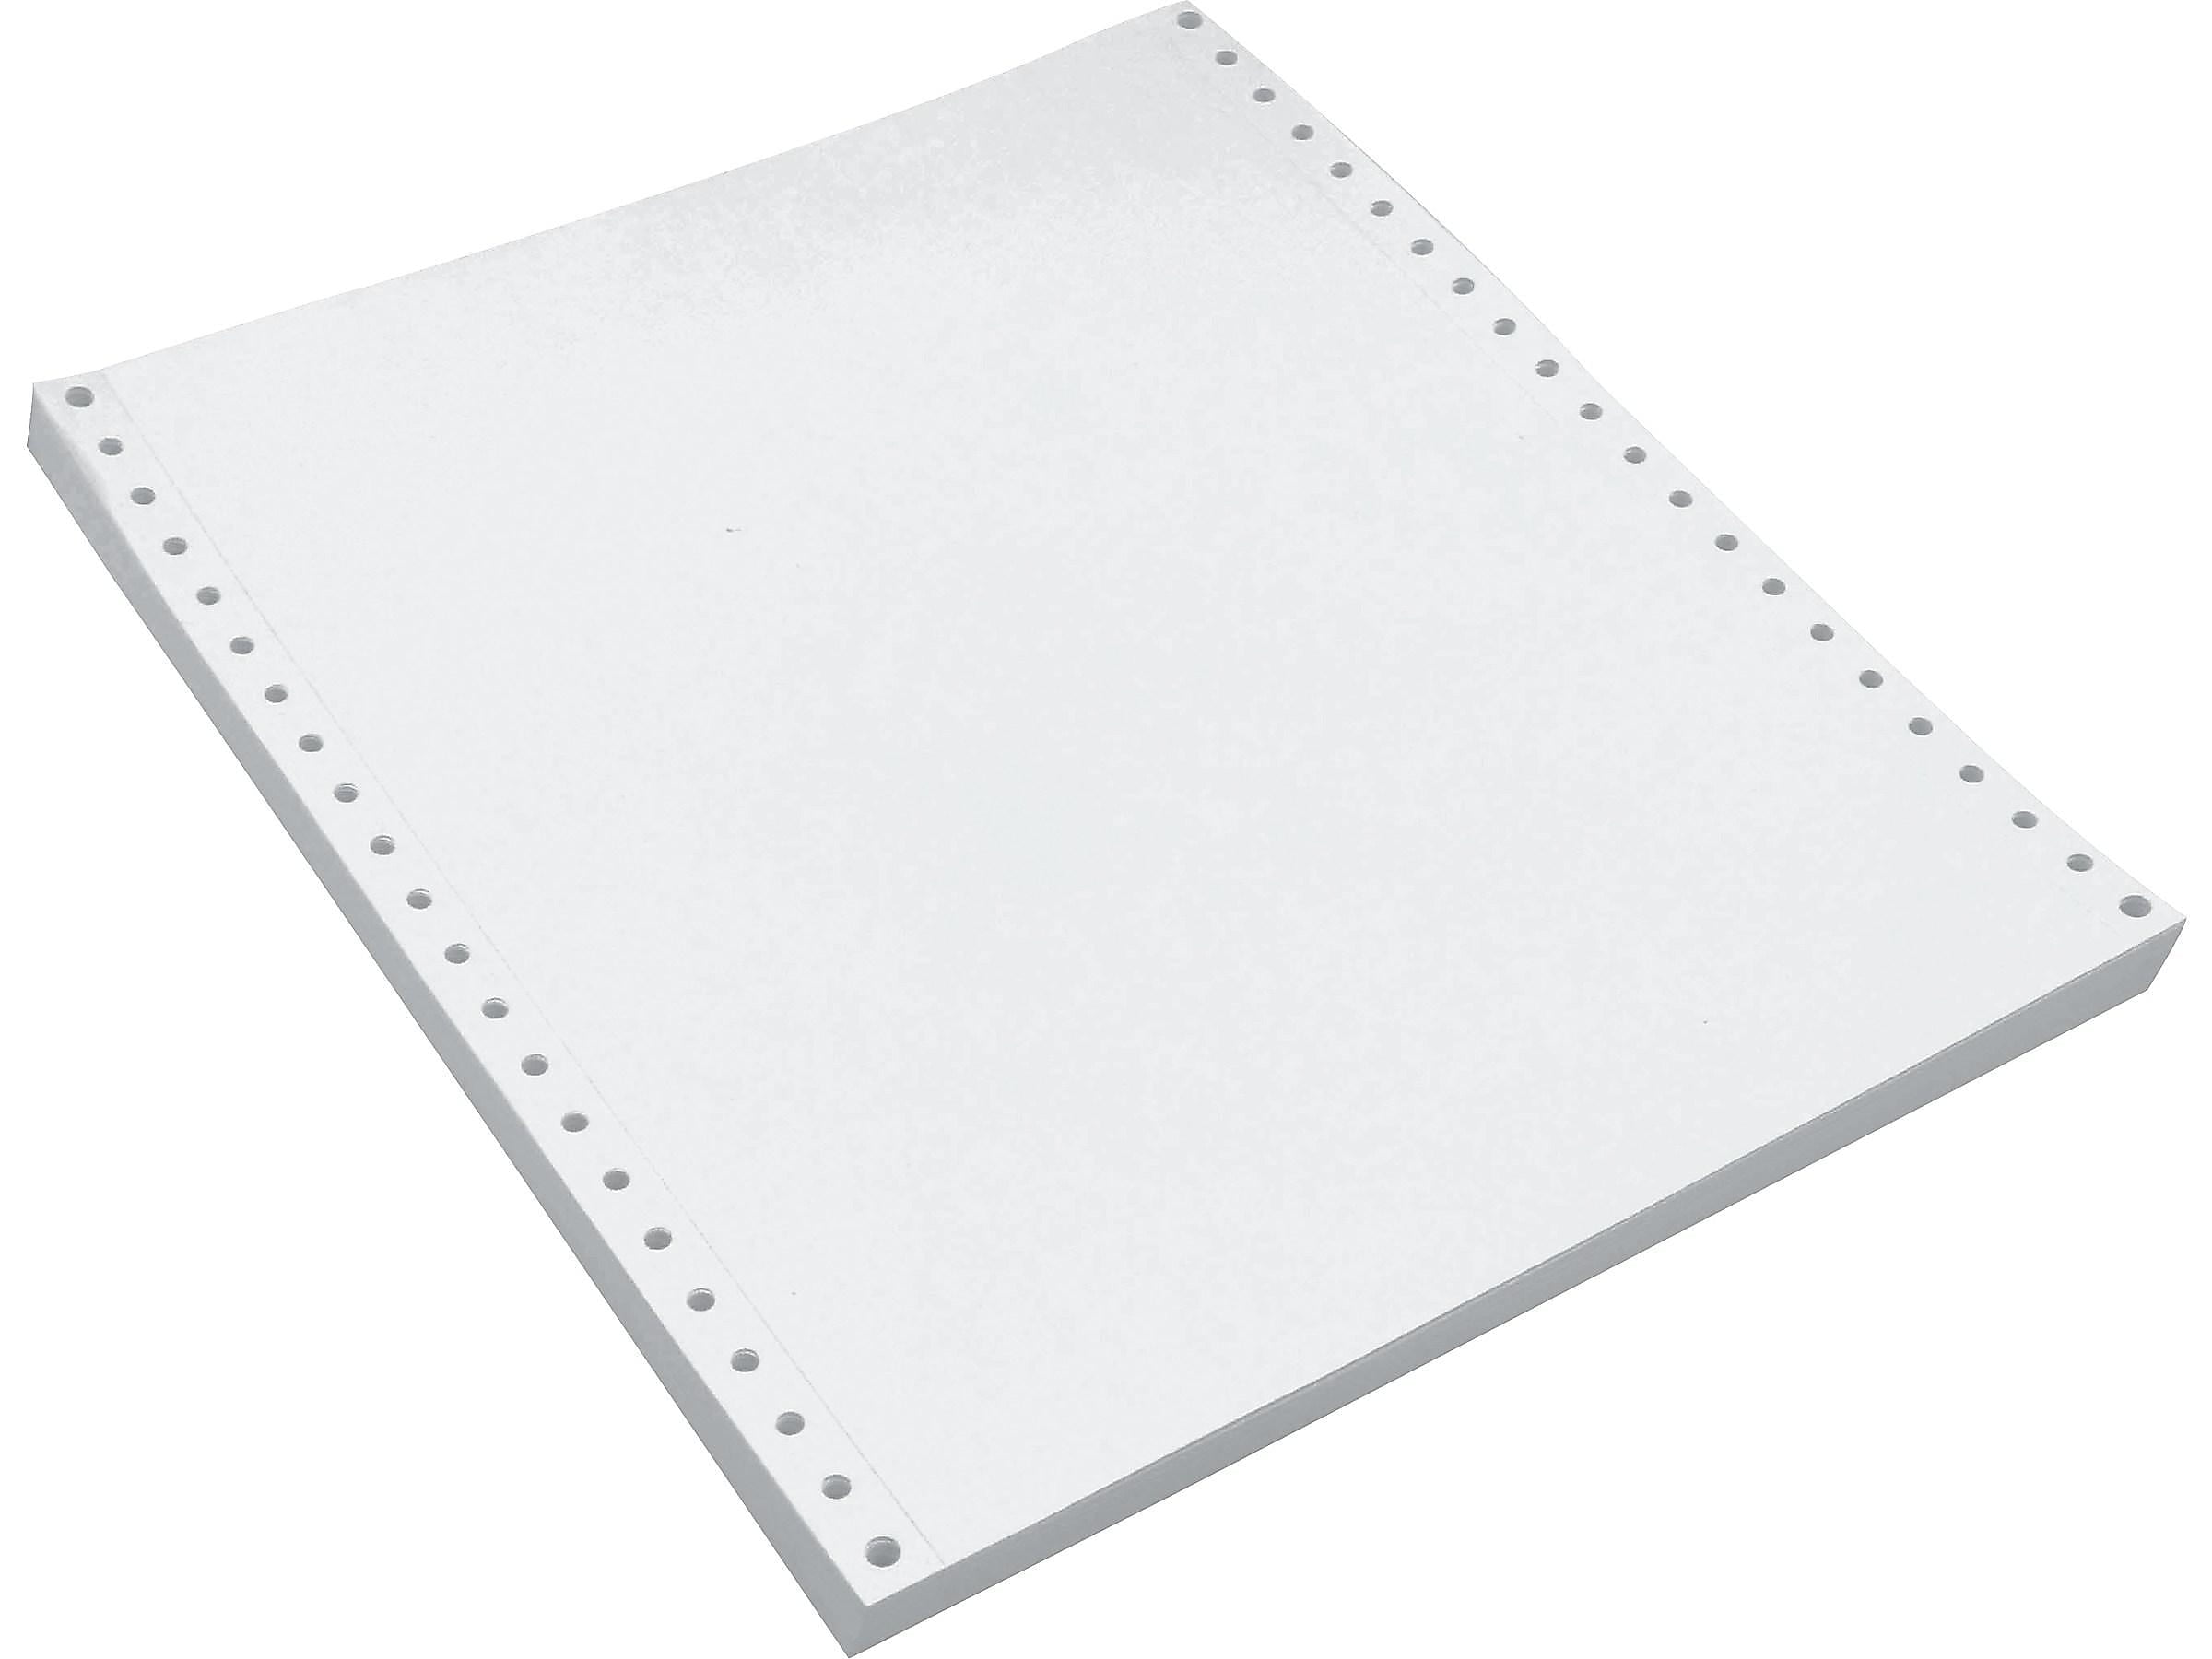 Staples Black Curl & Smudge Resistant Carbon Paper 8.25 x 11.25 100 Sheets